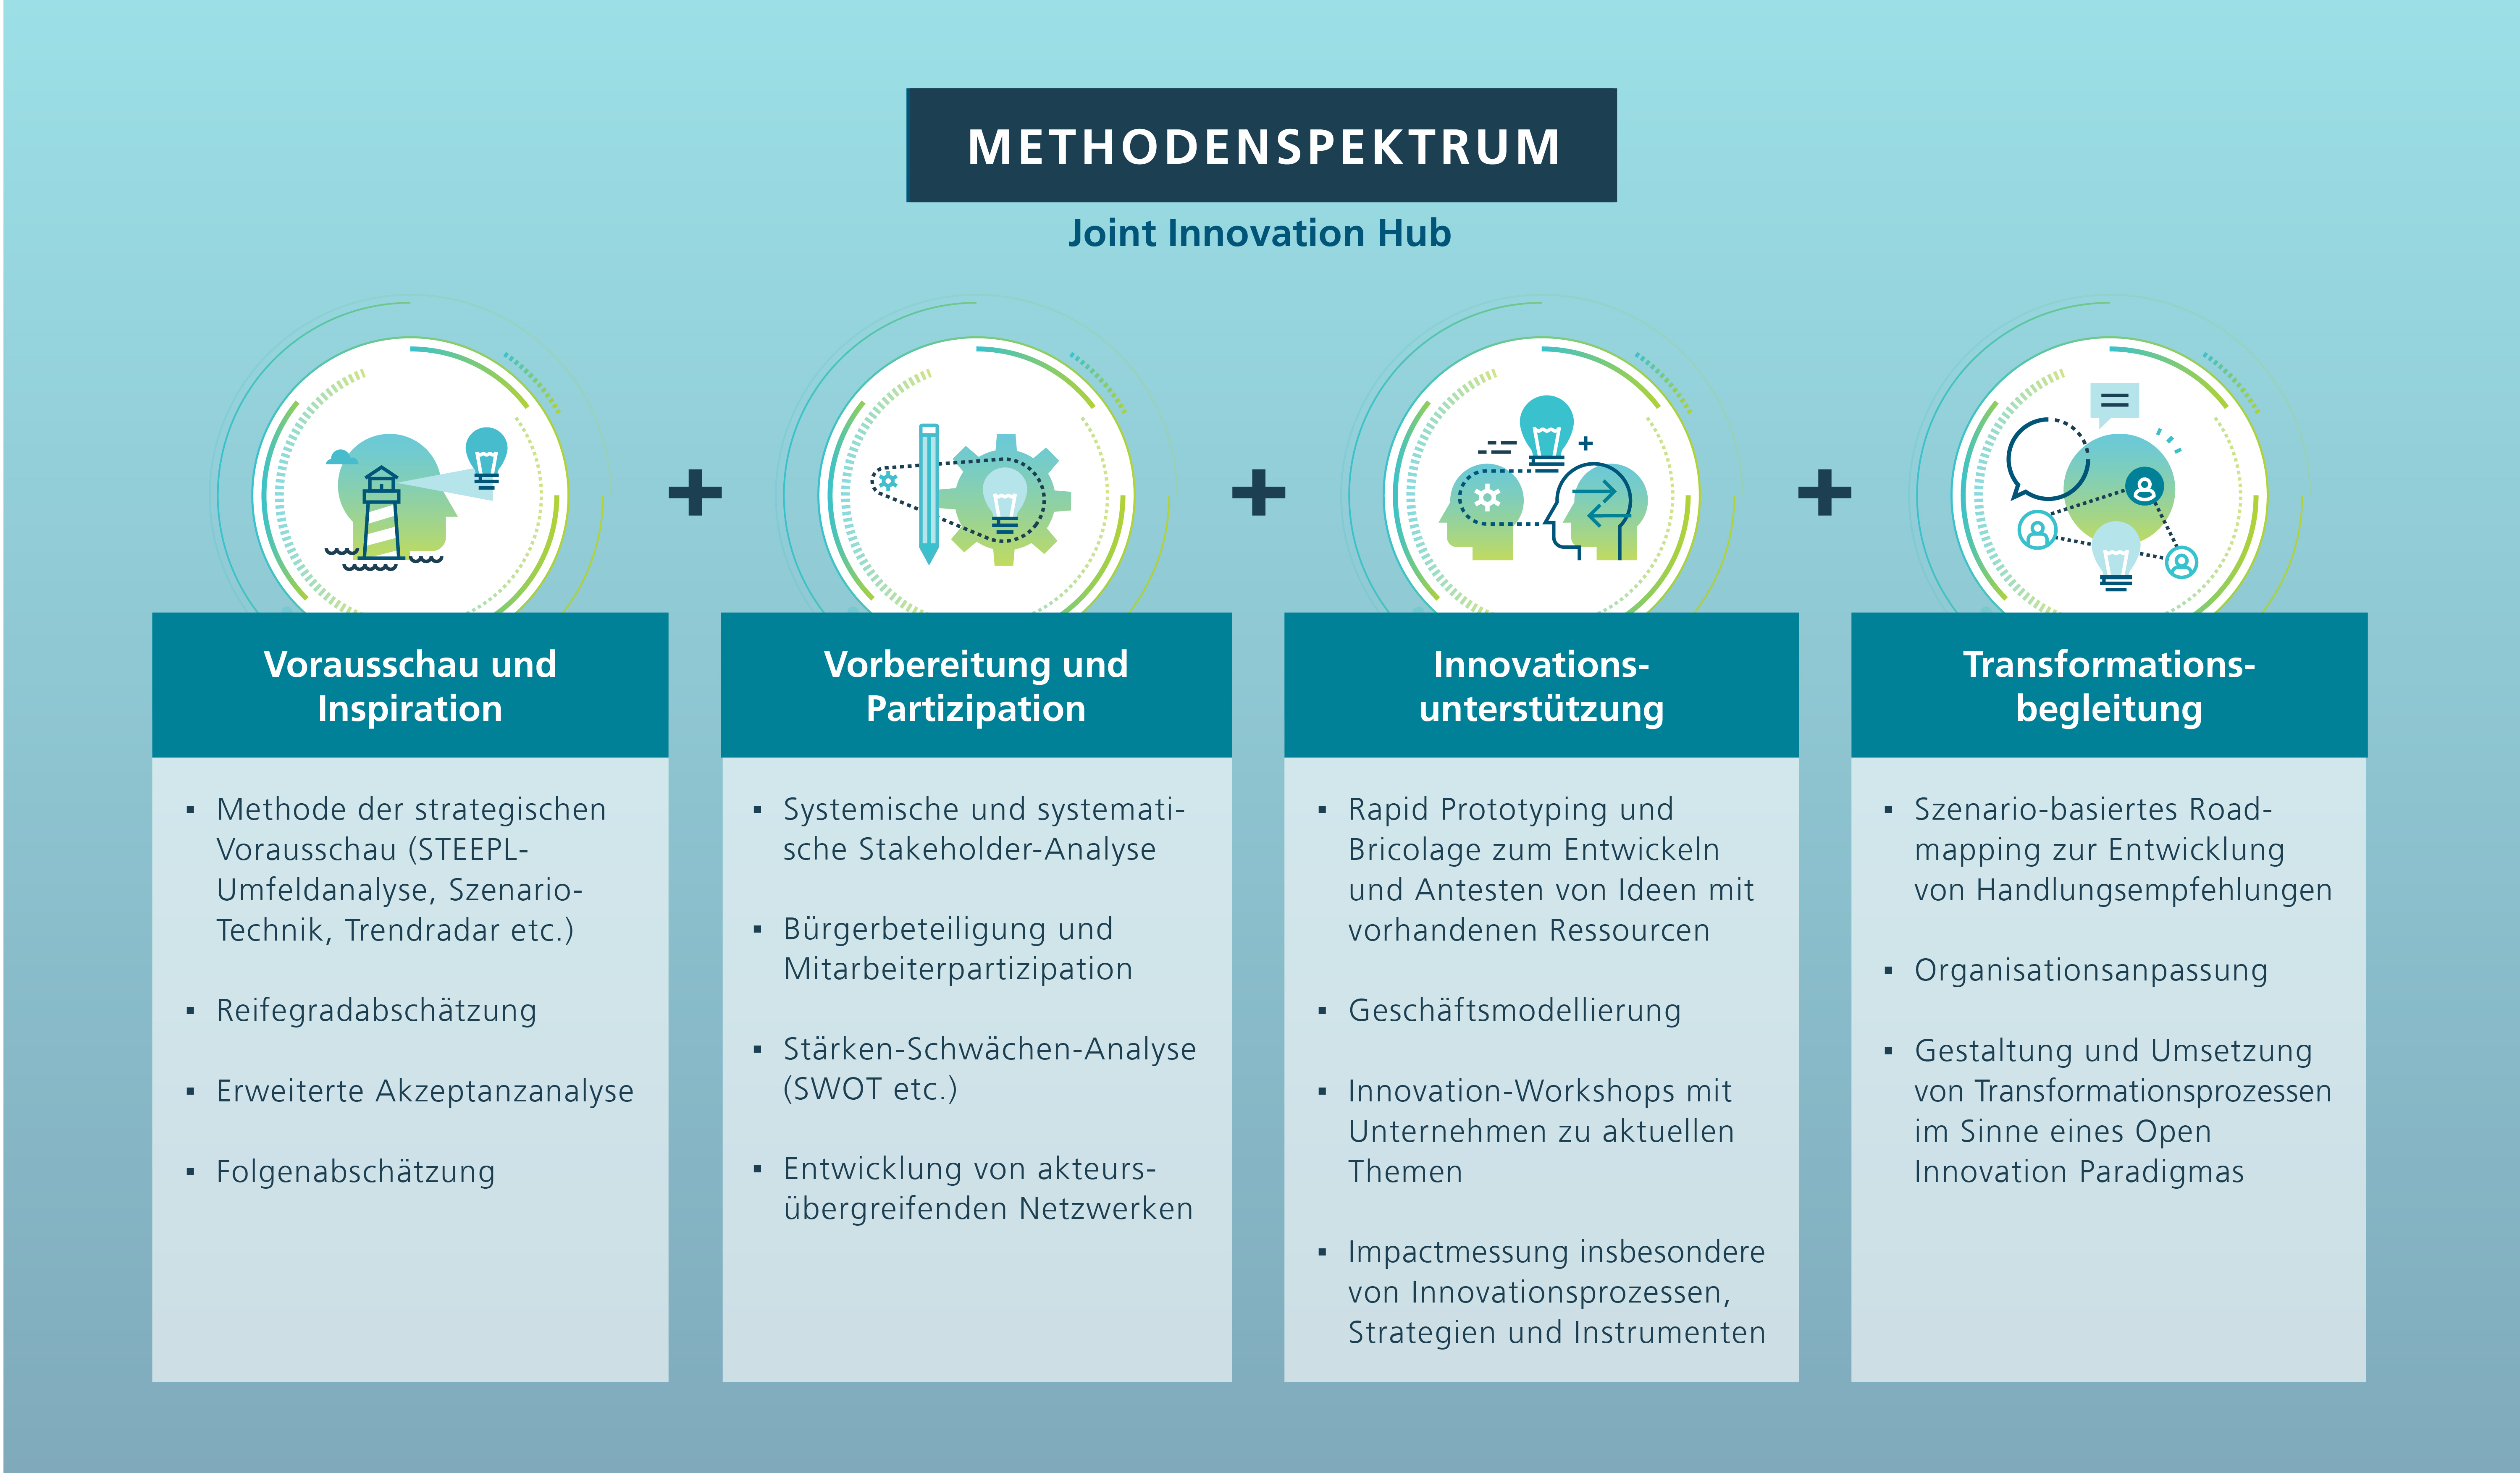 Abbildung 2: Methodenspektrum des JIH-Heilbronns entlang des gesamten Innovationsprozesses in den Bereichen Innovation, Digitalisierung und KI sowie Nachhaltigkeit